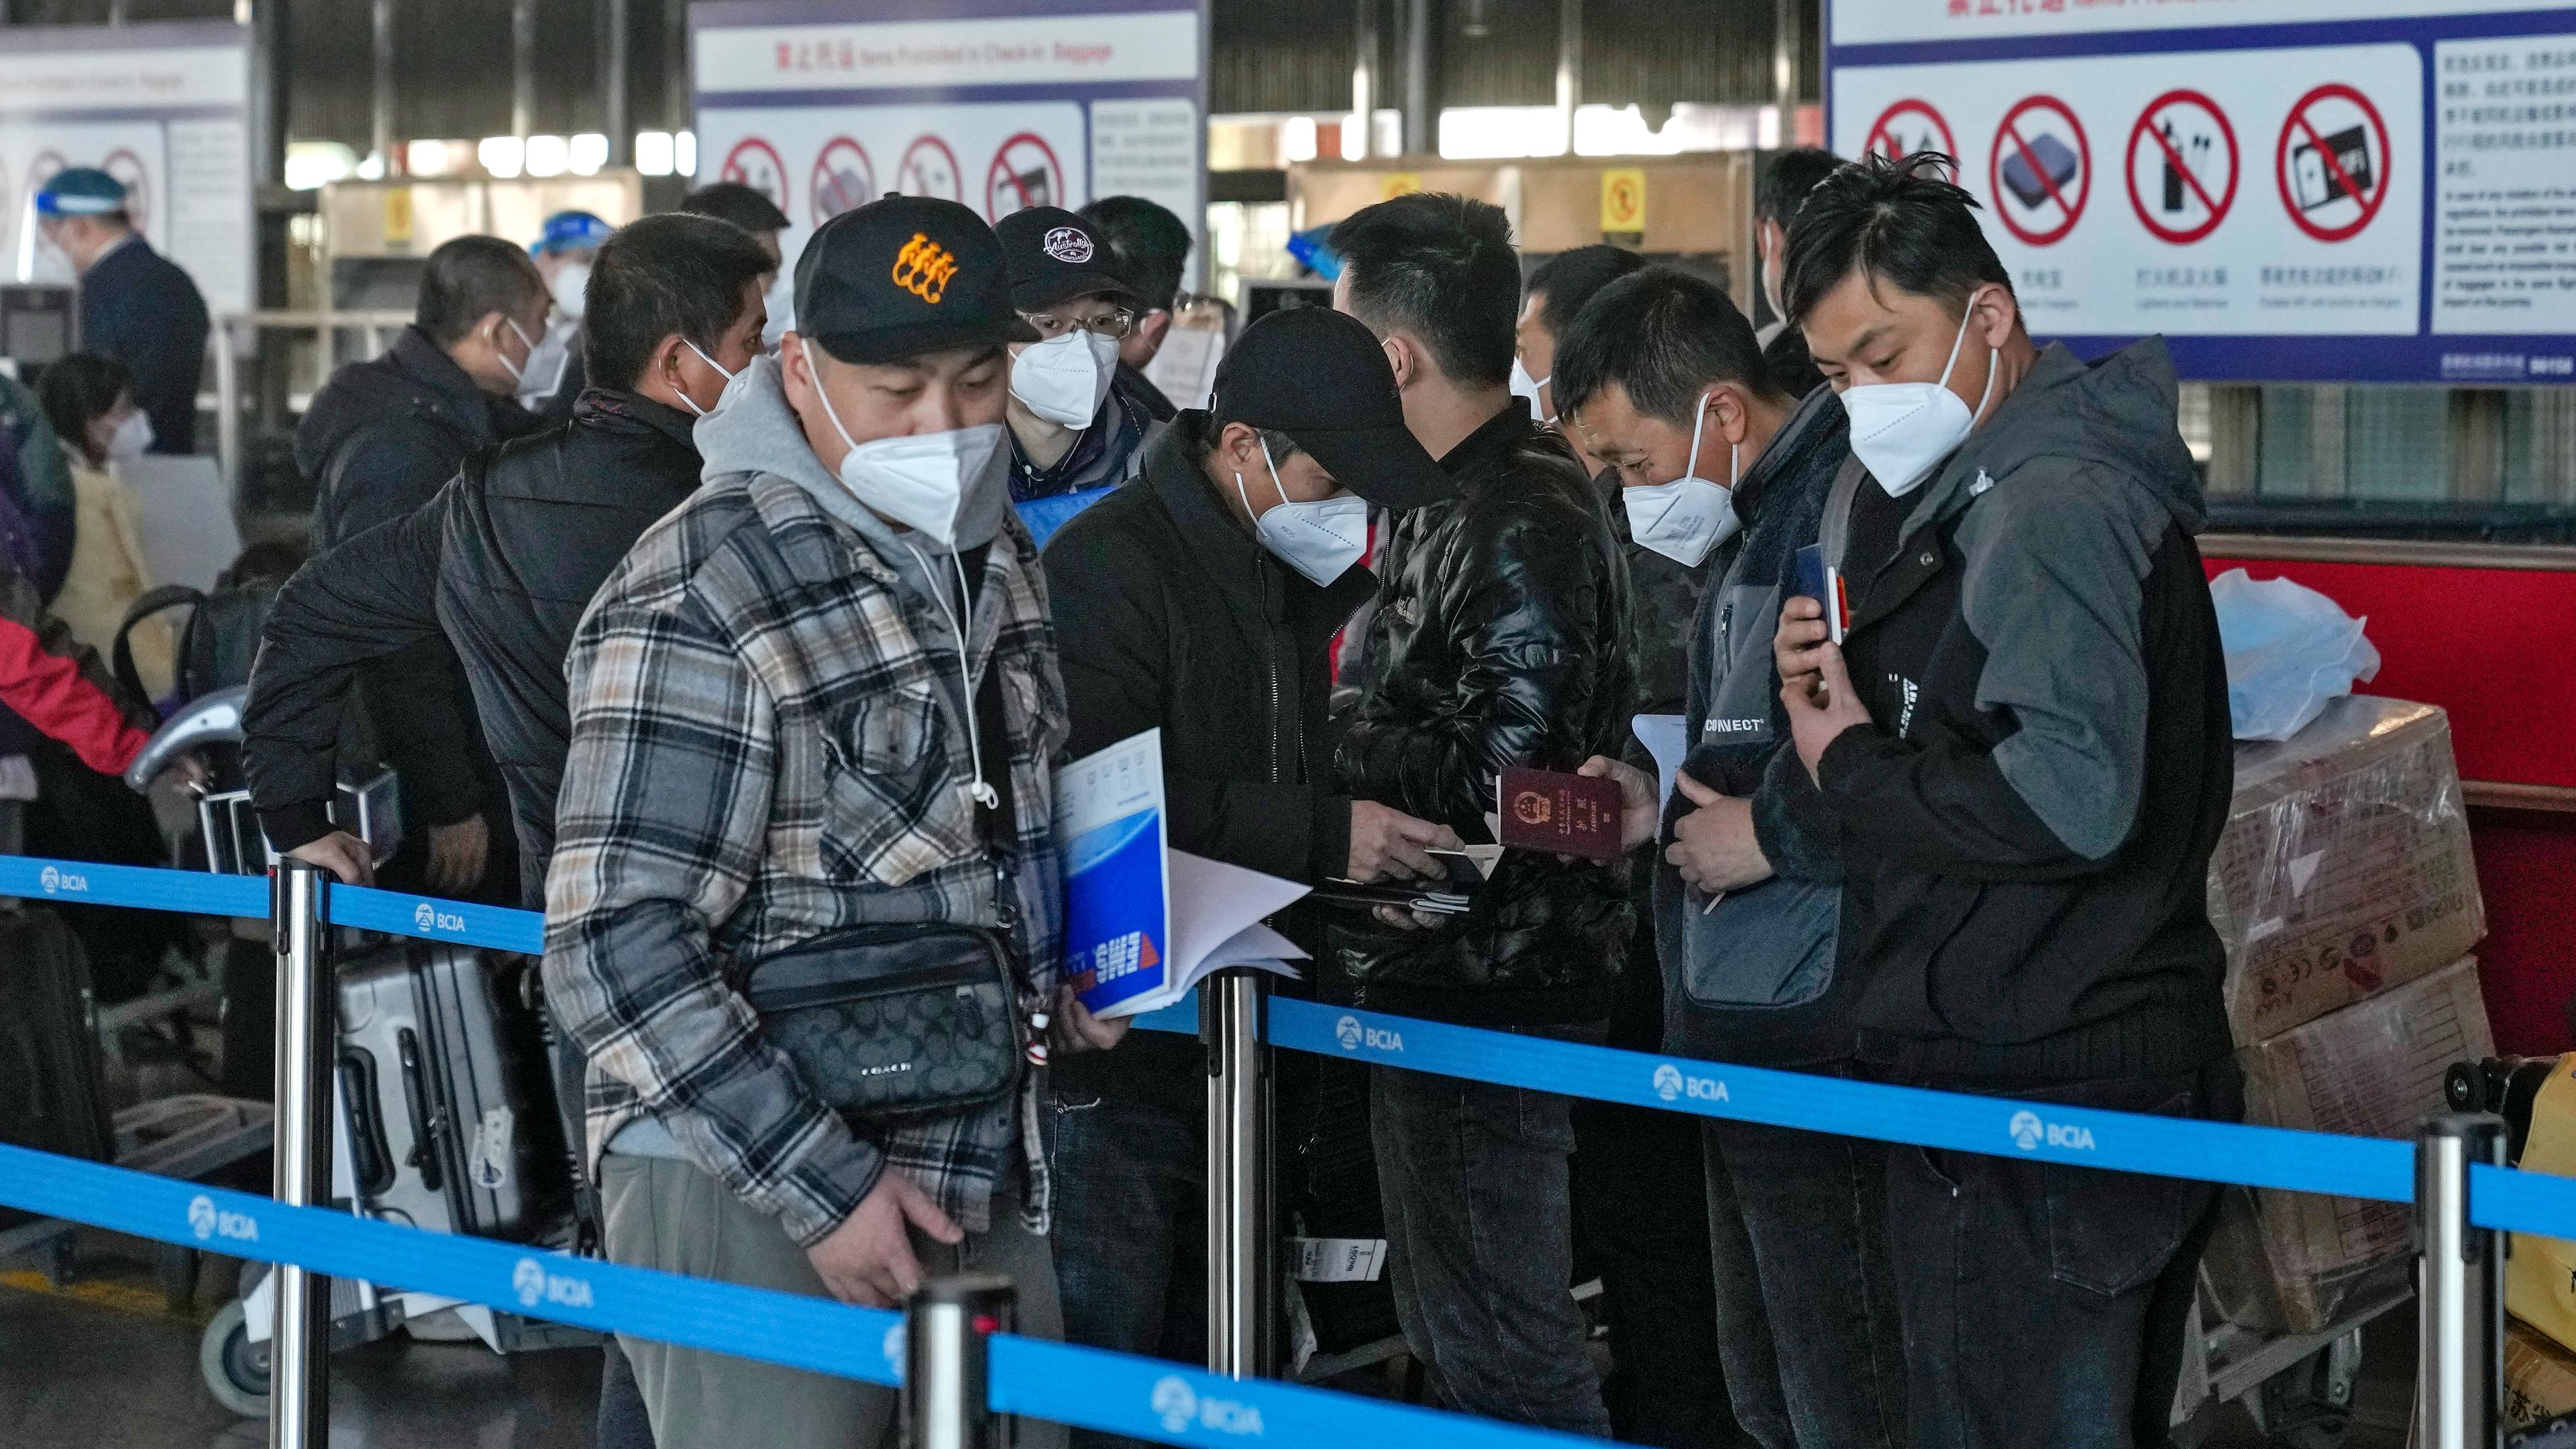 Reisende stehen am Check-in-Schalter für internationale Flüge auf dem Flughafen in Peking an, aufgenommen am 29.12.2022